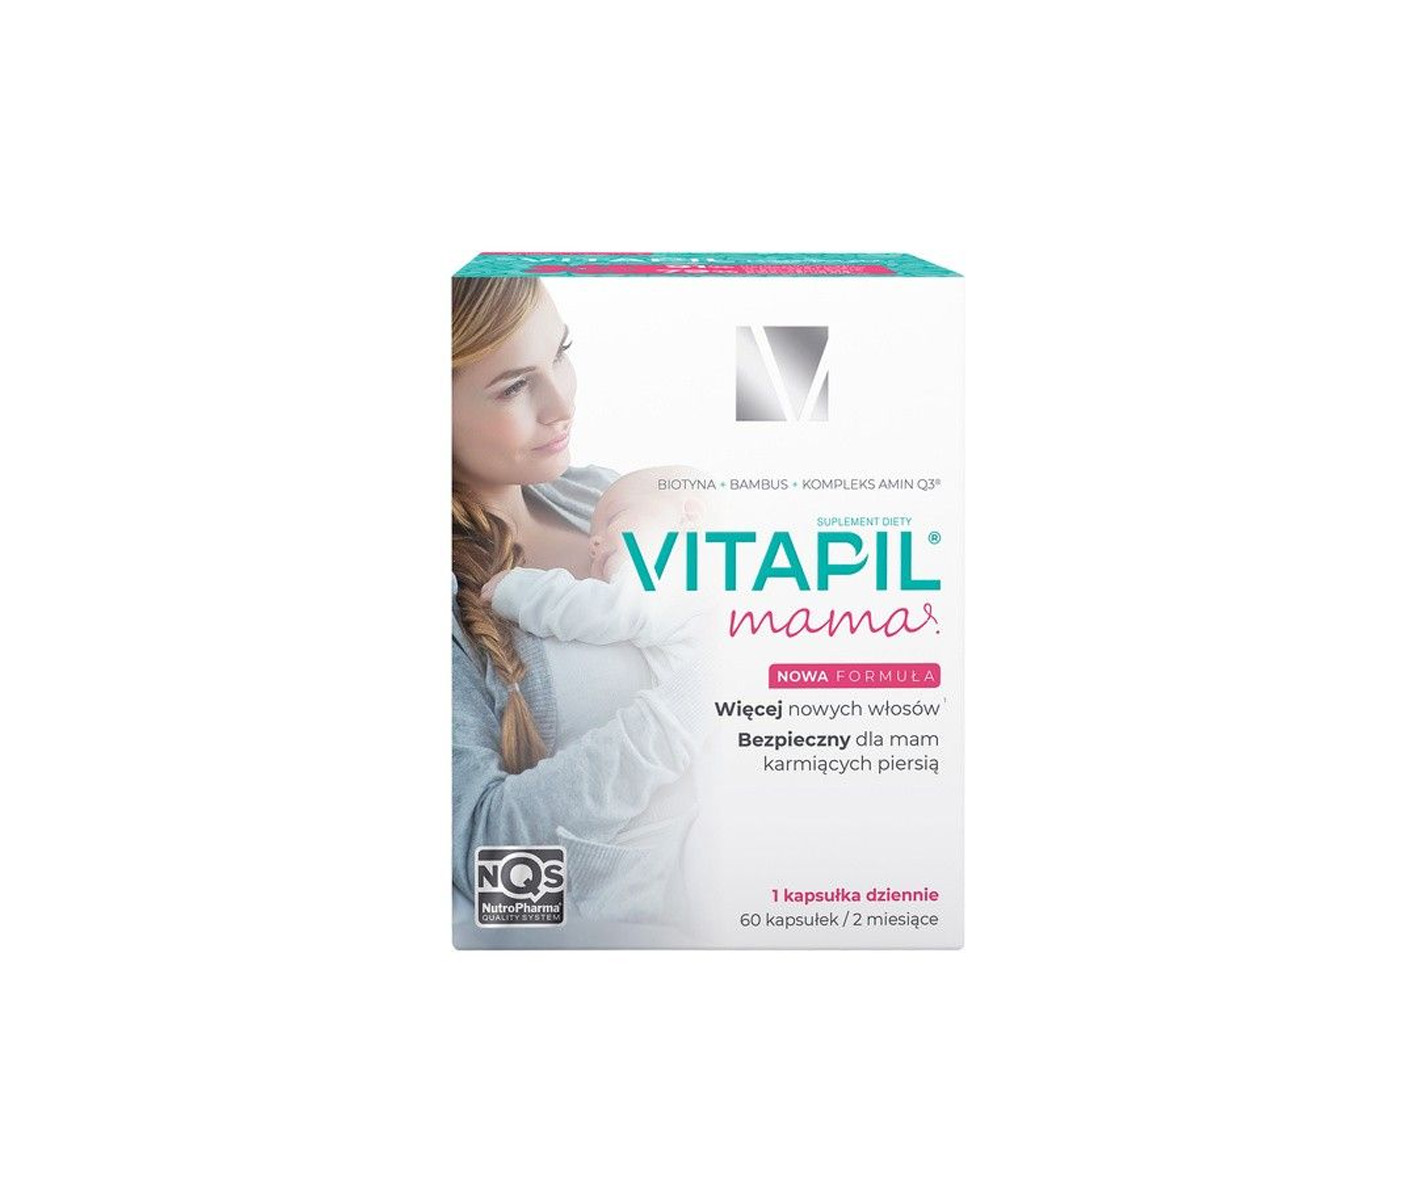 Vitapil Mama, ein Nahrungsergänzungsmittel gegen Haarausfall nach der Schwangerschaft